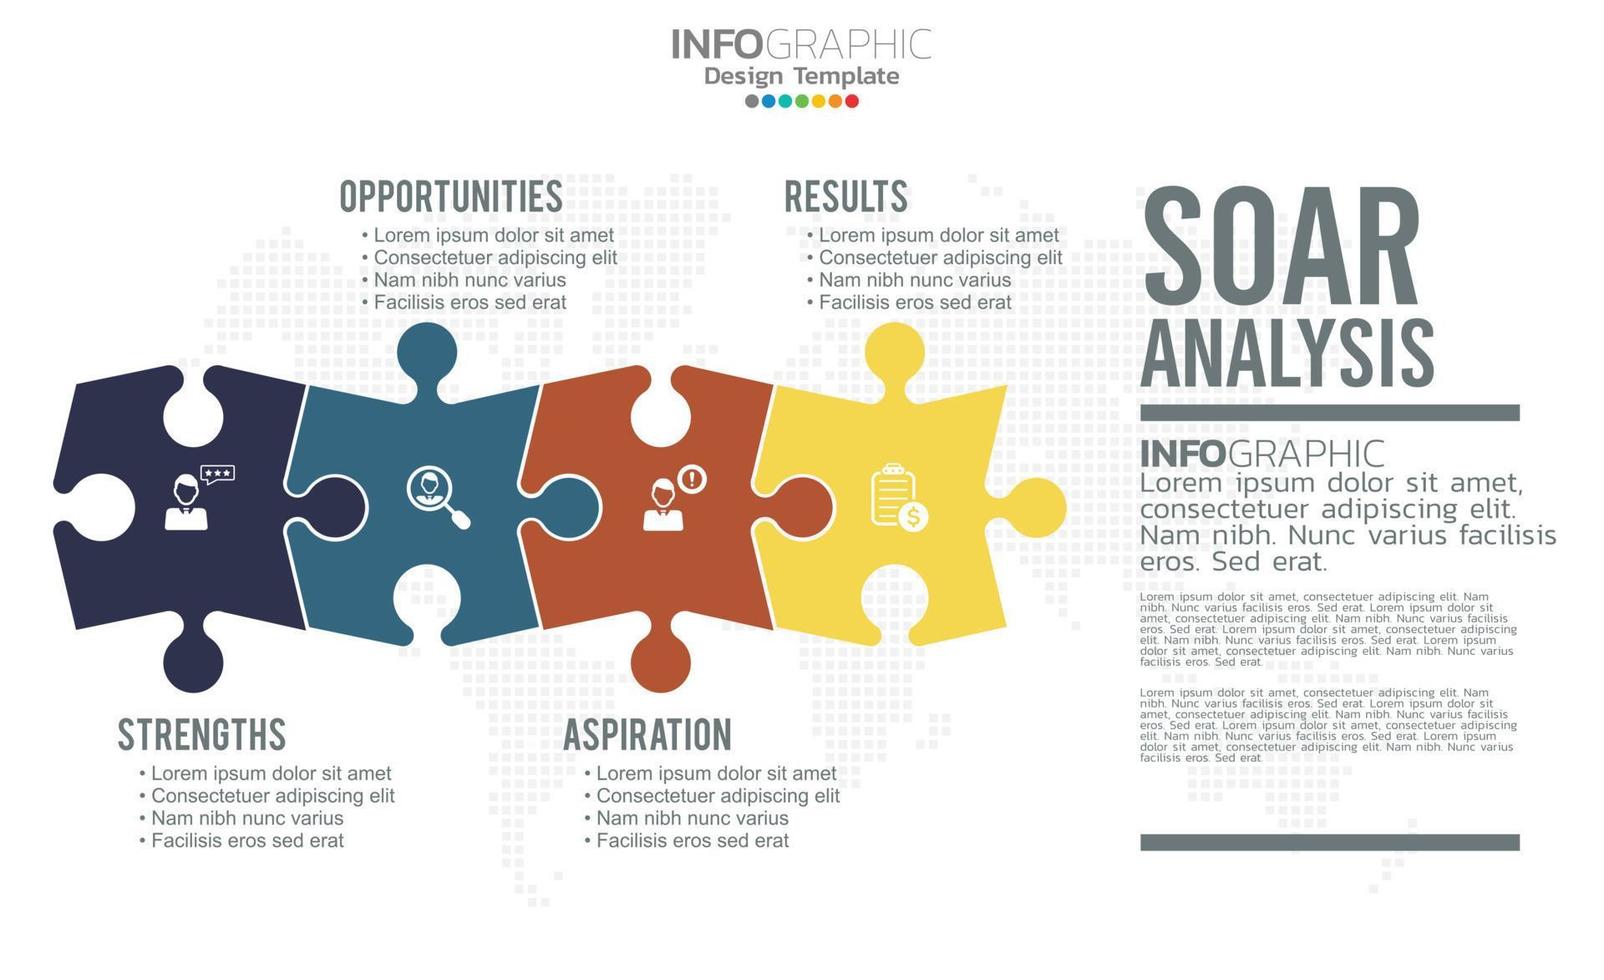 soar bannière infographique pour l'analyse commerciale, la force, les opportunités, les aspirations et les résultats. vecteur